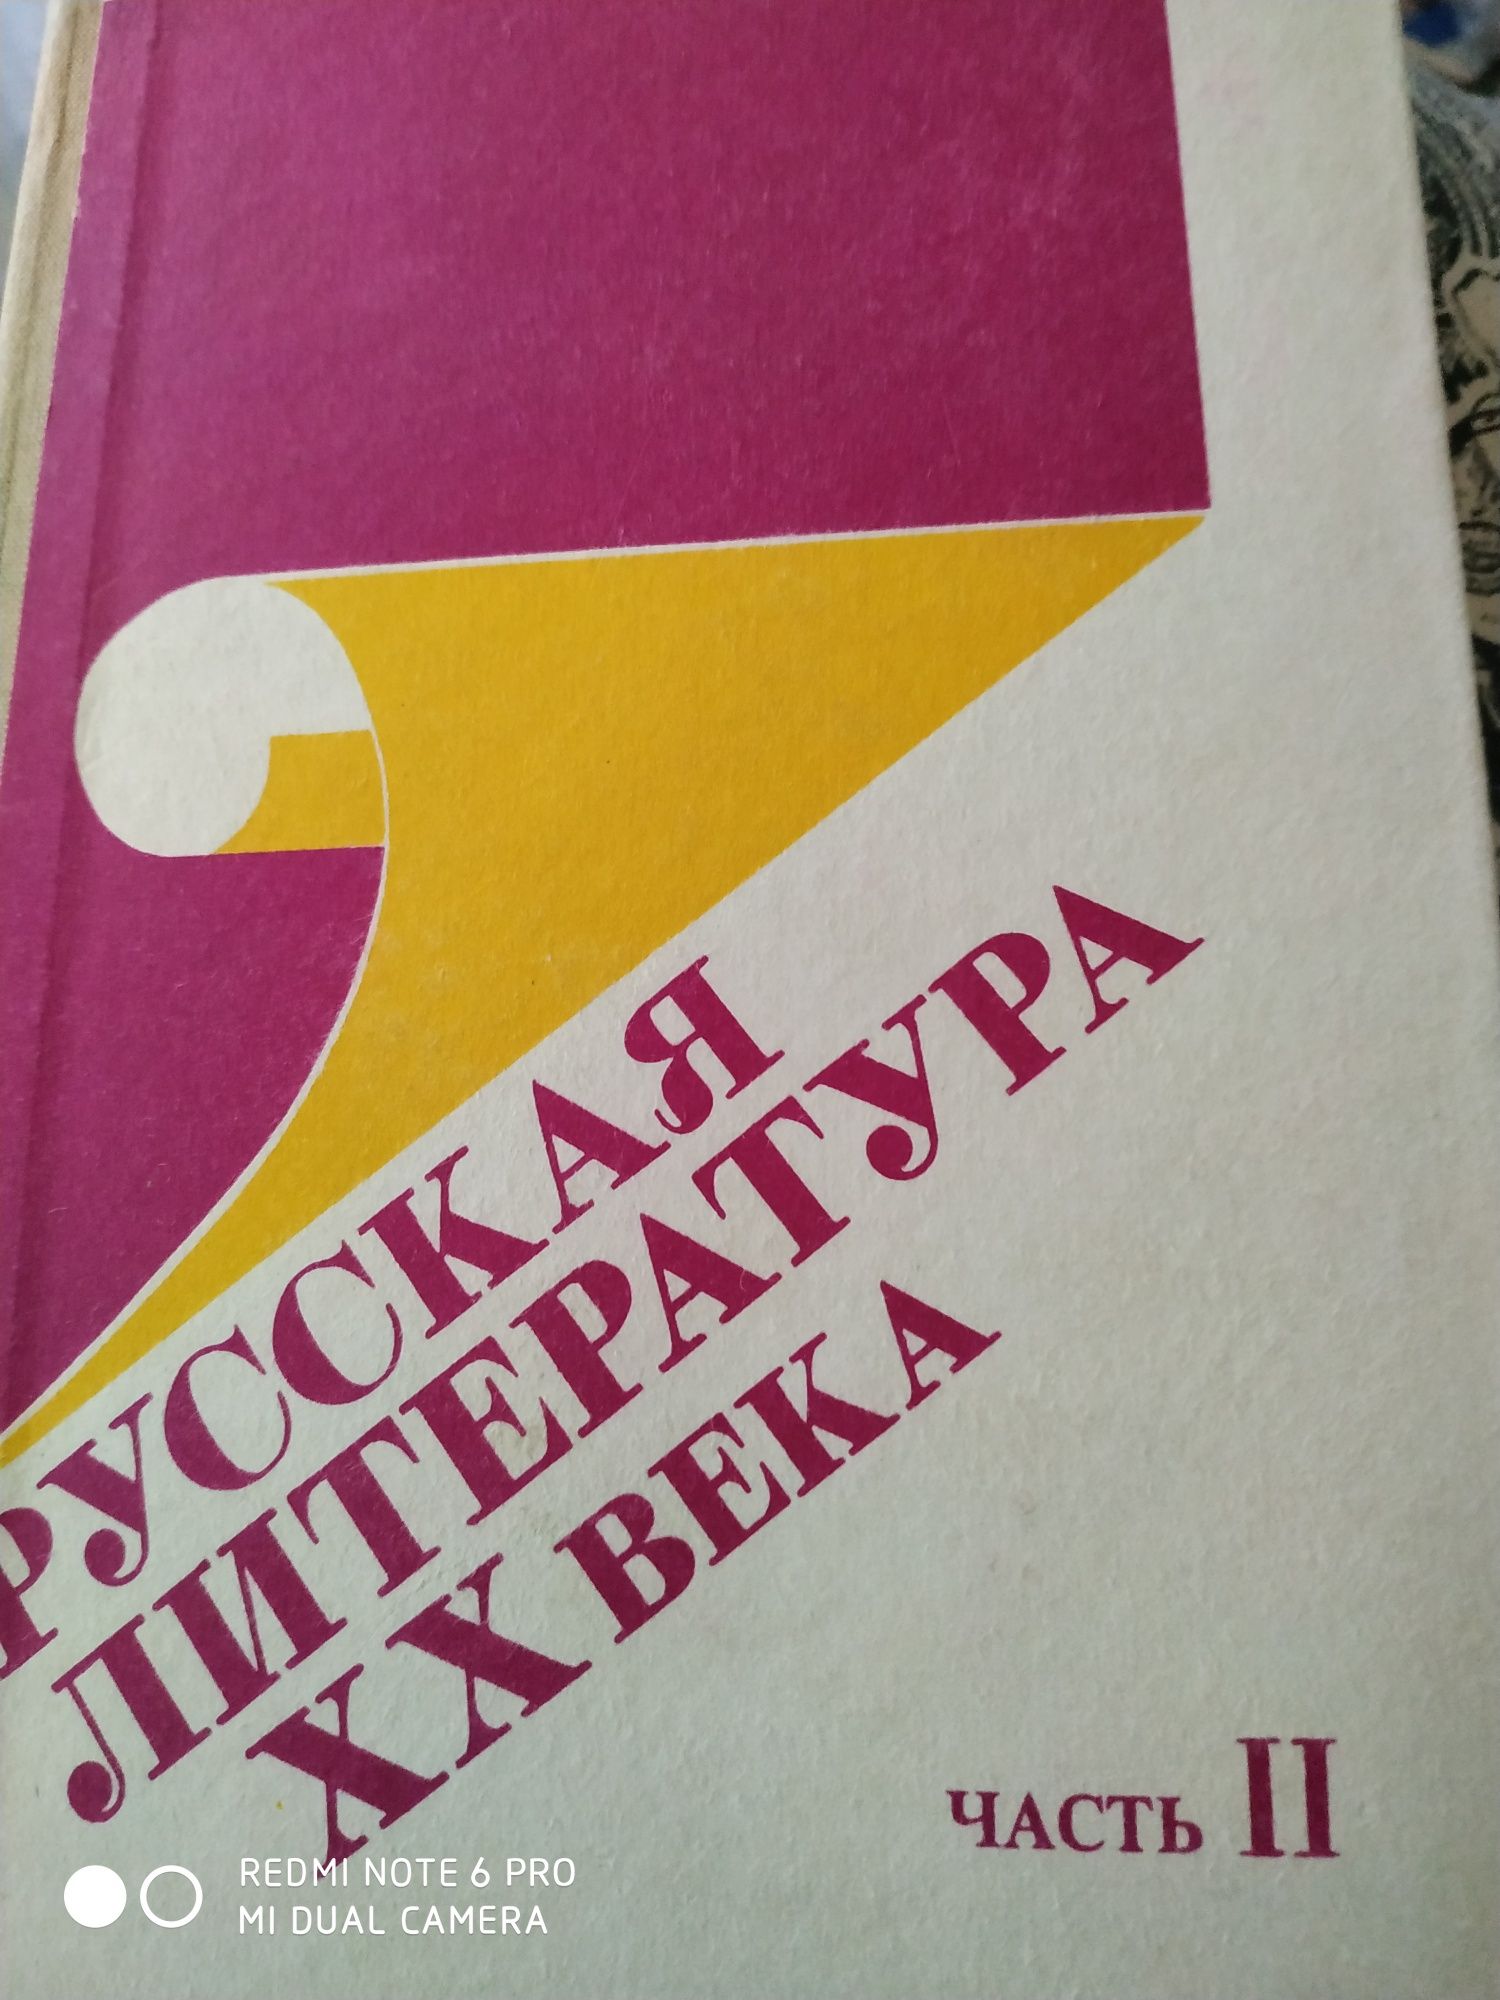 Учебники по русскому языку и литературе для школьников